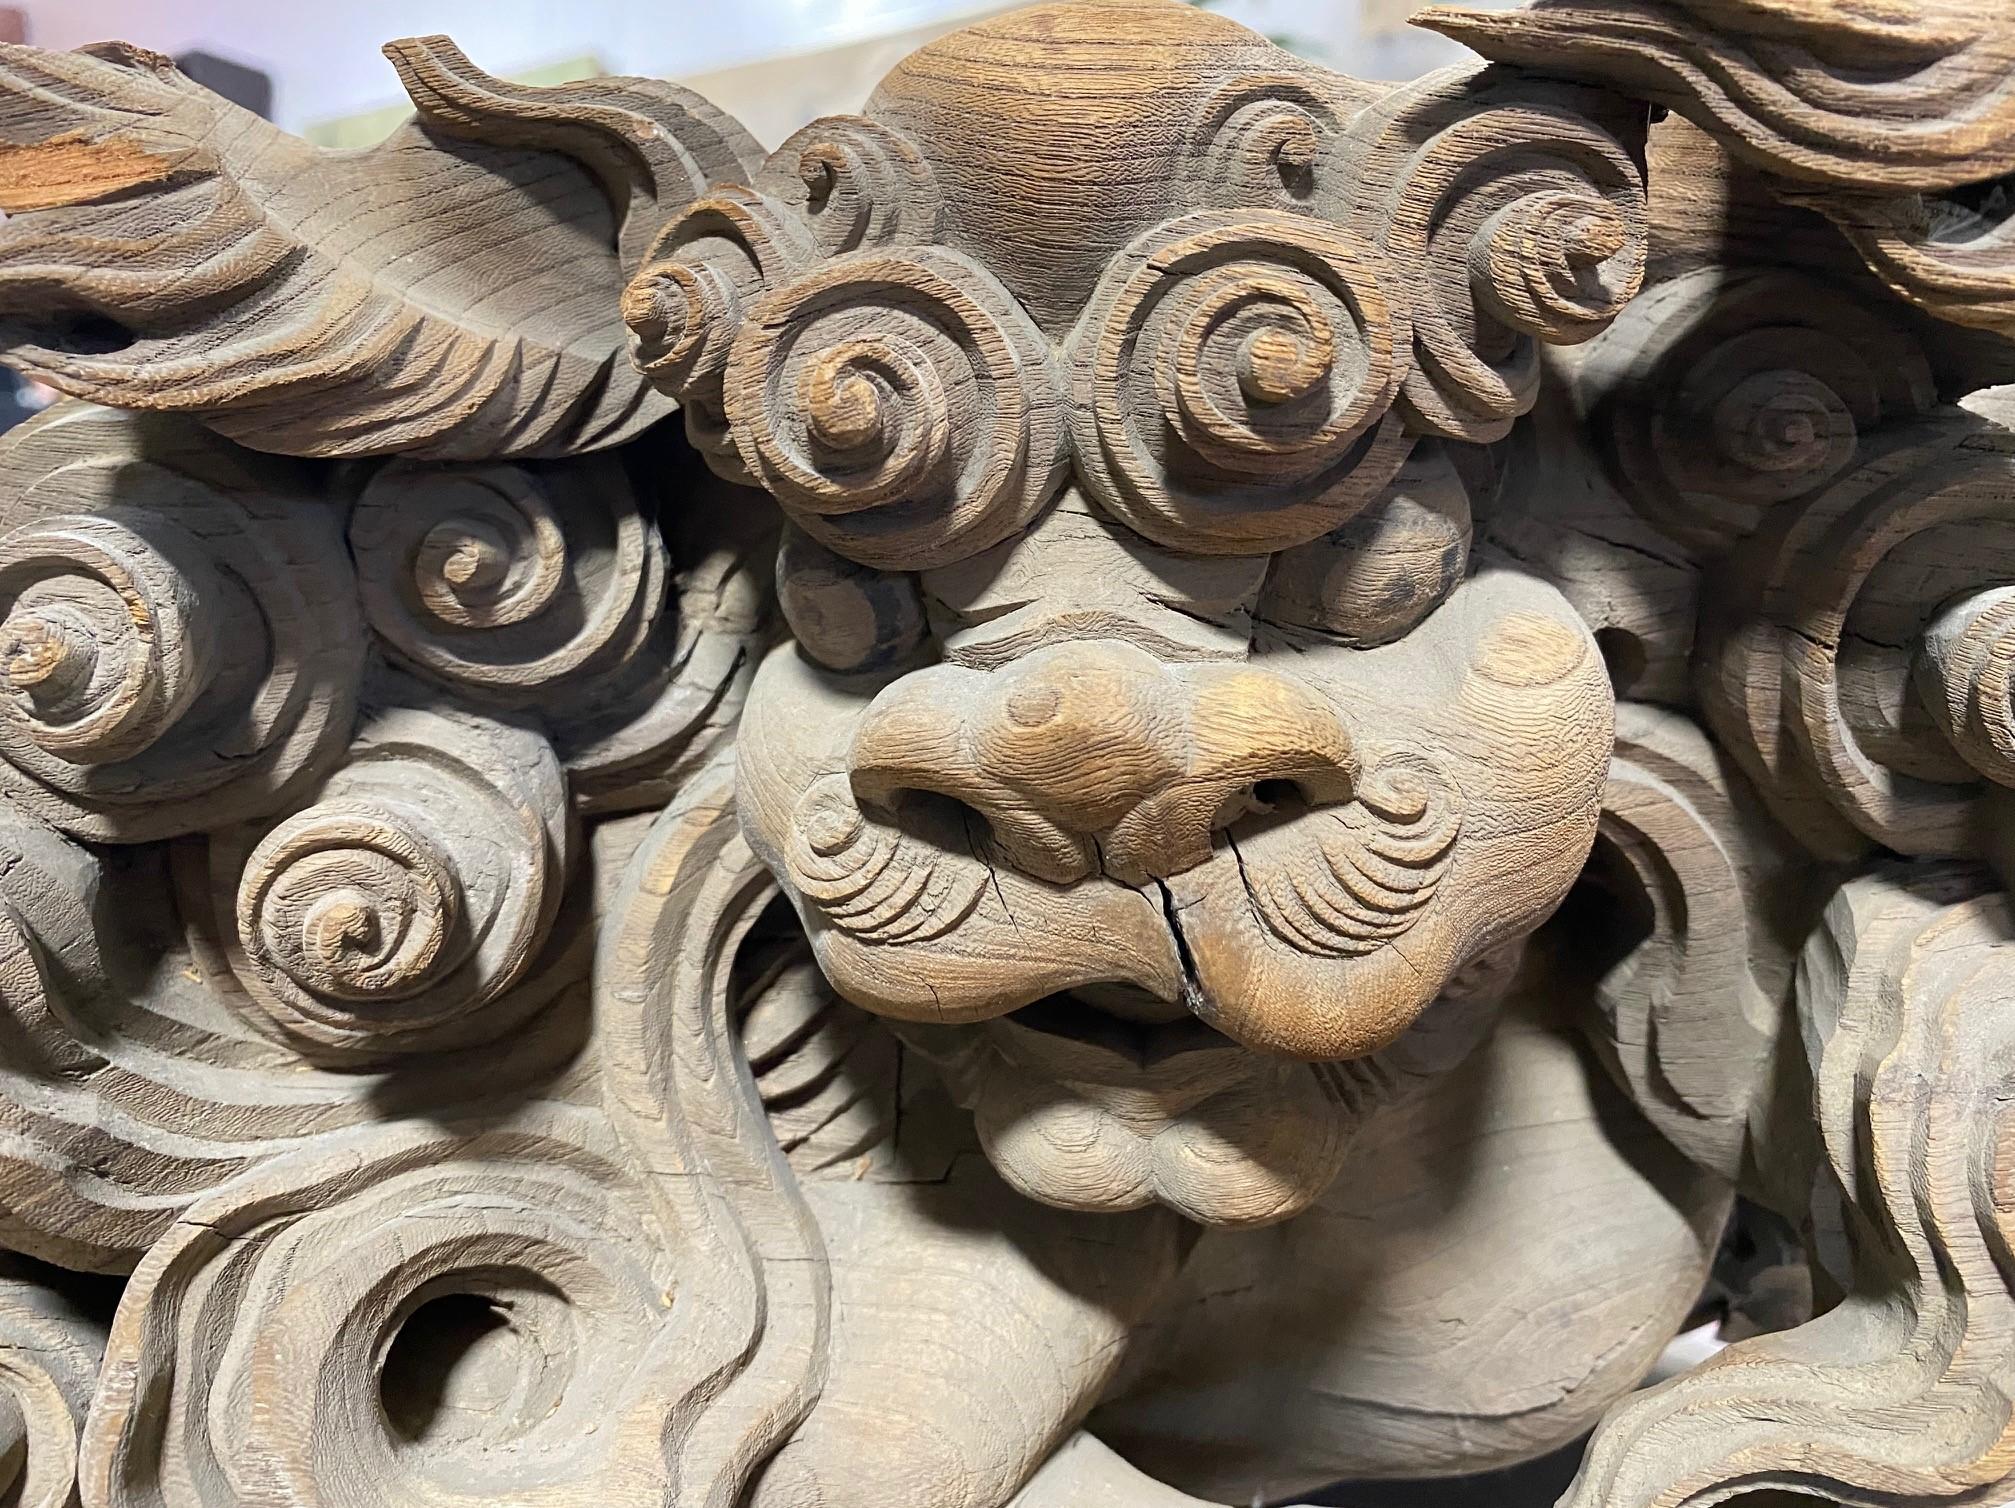 Hand-Carved Japanese Wood Carved Edo Temple Shinto Shrine Guardian Shishi Komainu Lion Dogs